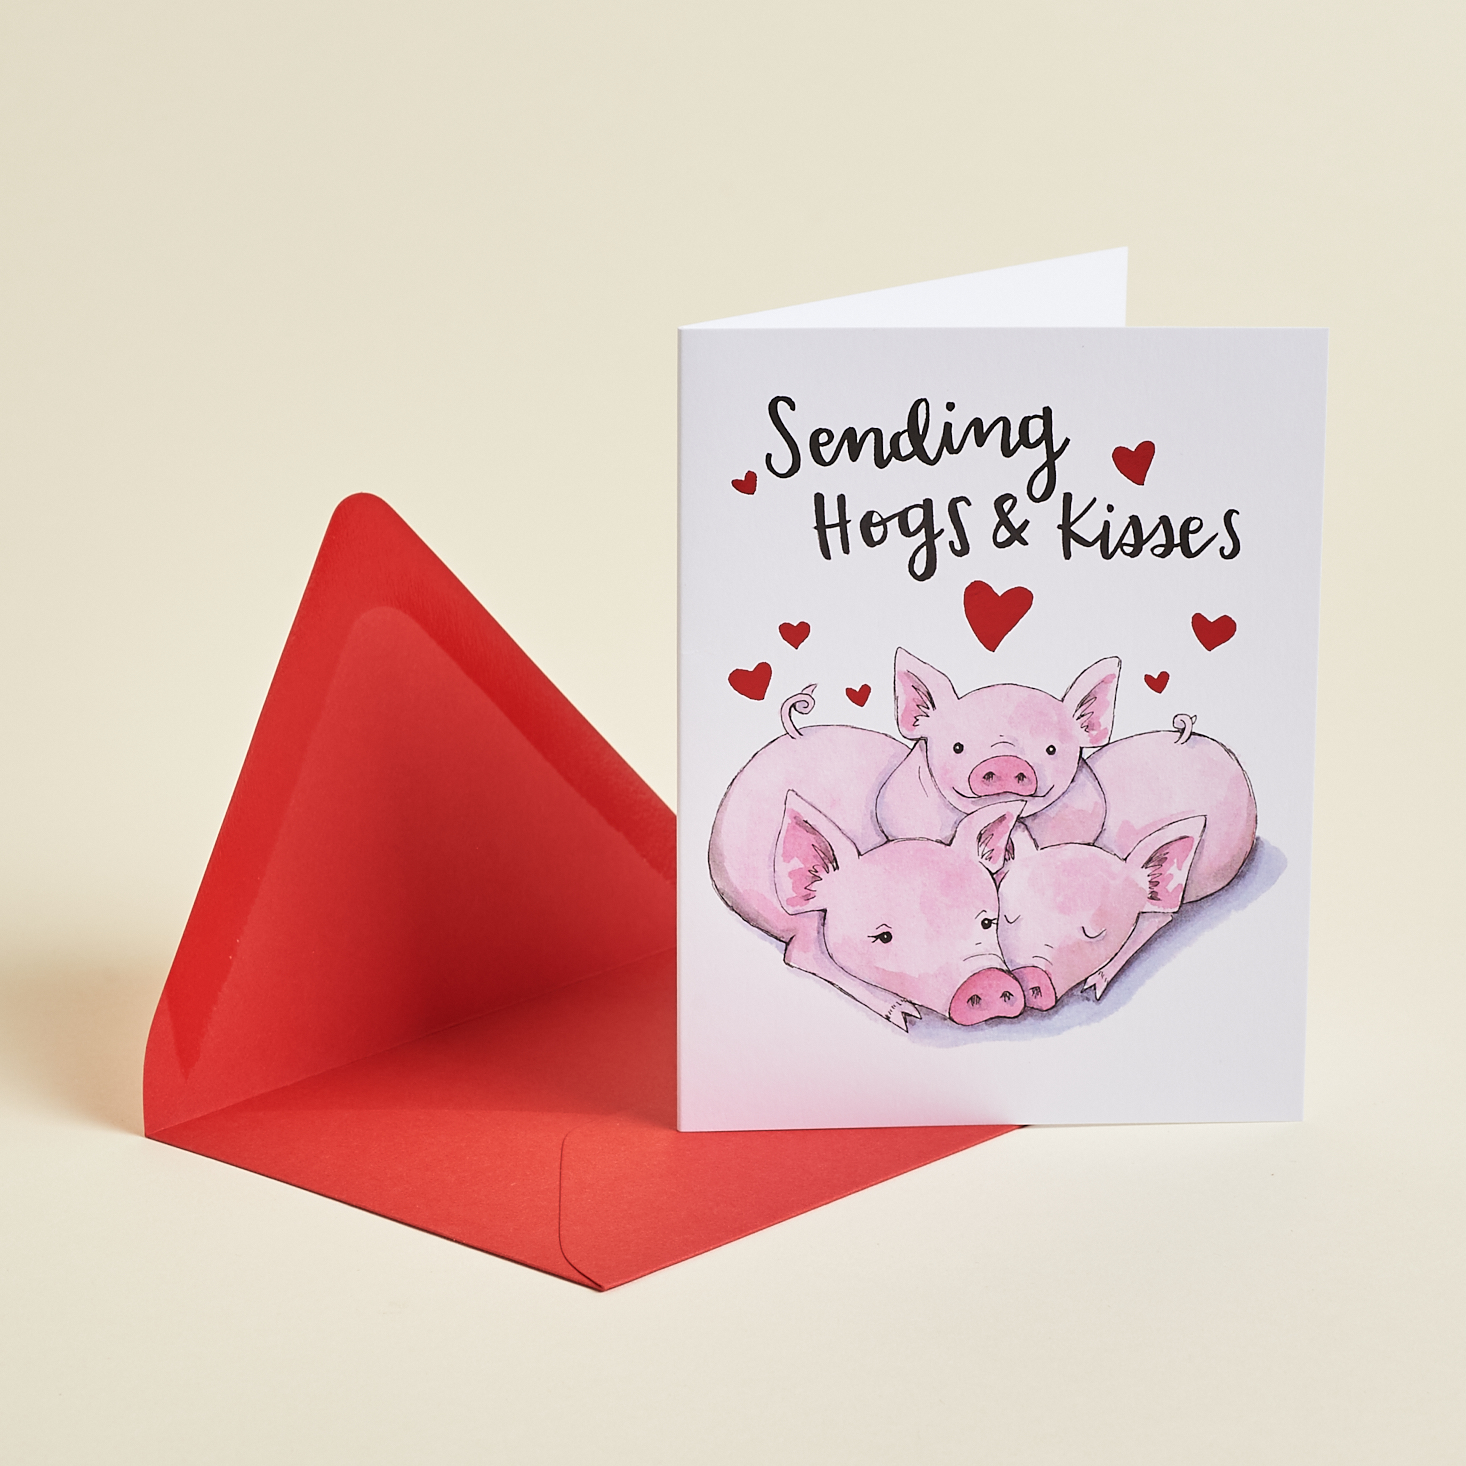 Sending Hogs & Kisses card from Postmarkd Studio February 2021